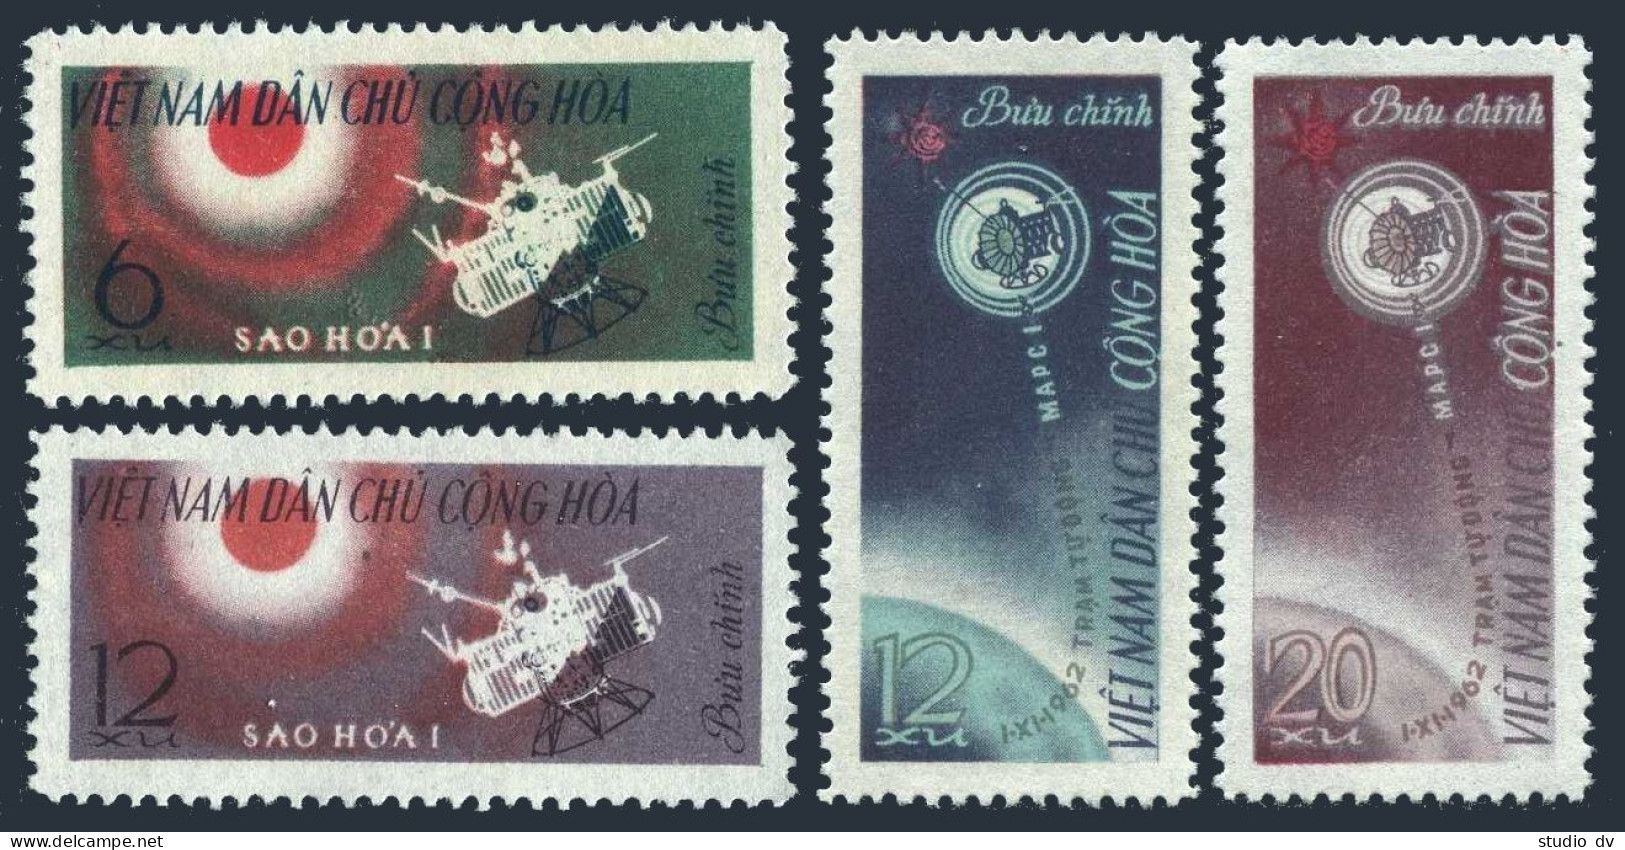 Viet Nam 251-254,lightly Hinged.Michel 258-261. Mars 1 Spacecraft,1963. - Vietnam